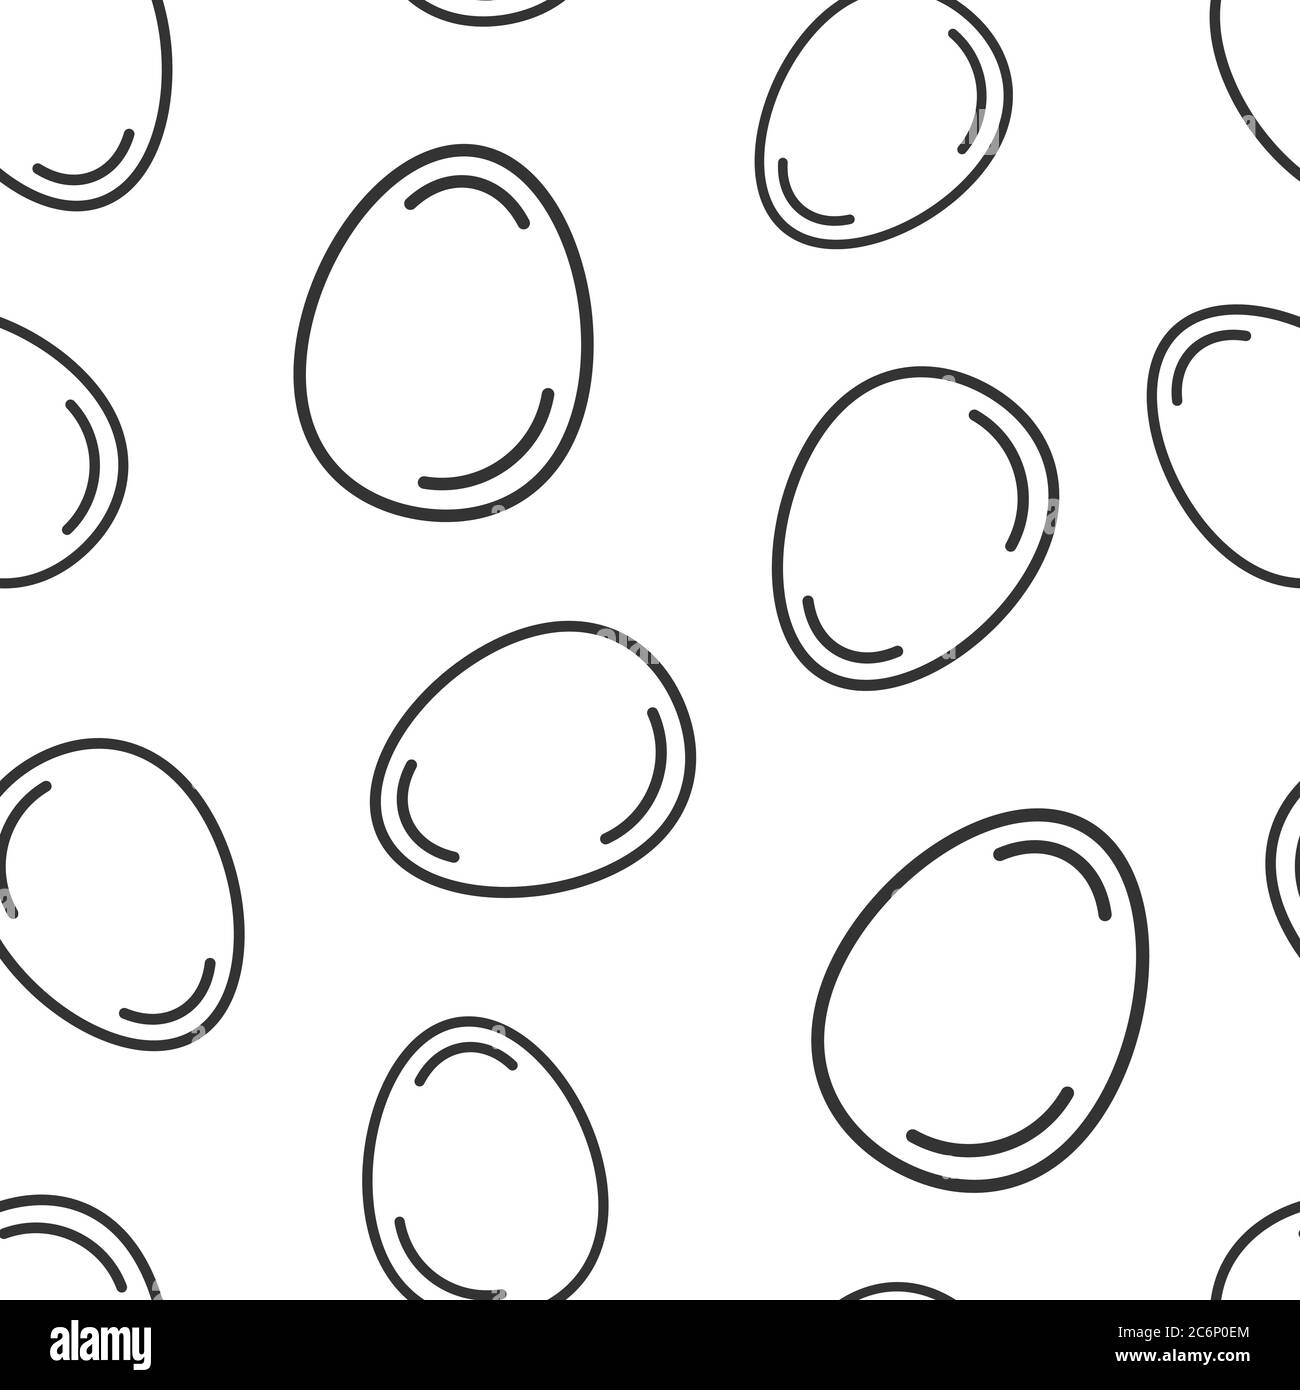 Ei-Ikone in flacher Form. Vektorgrafik Frühstück auf weißem, isoliertem Hintergrund. Eggshell nahtlose Muster Business-Konzept. Stock Vektor